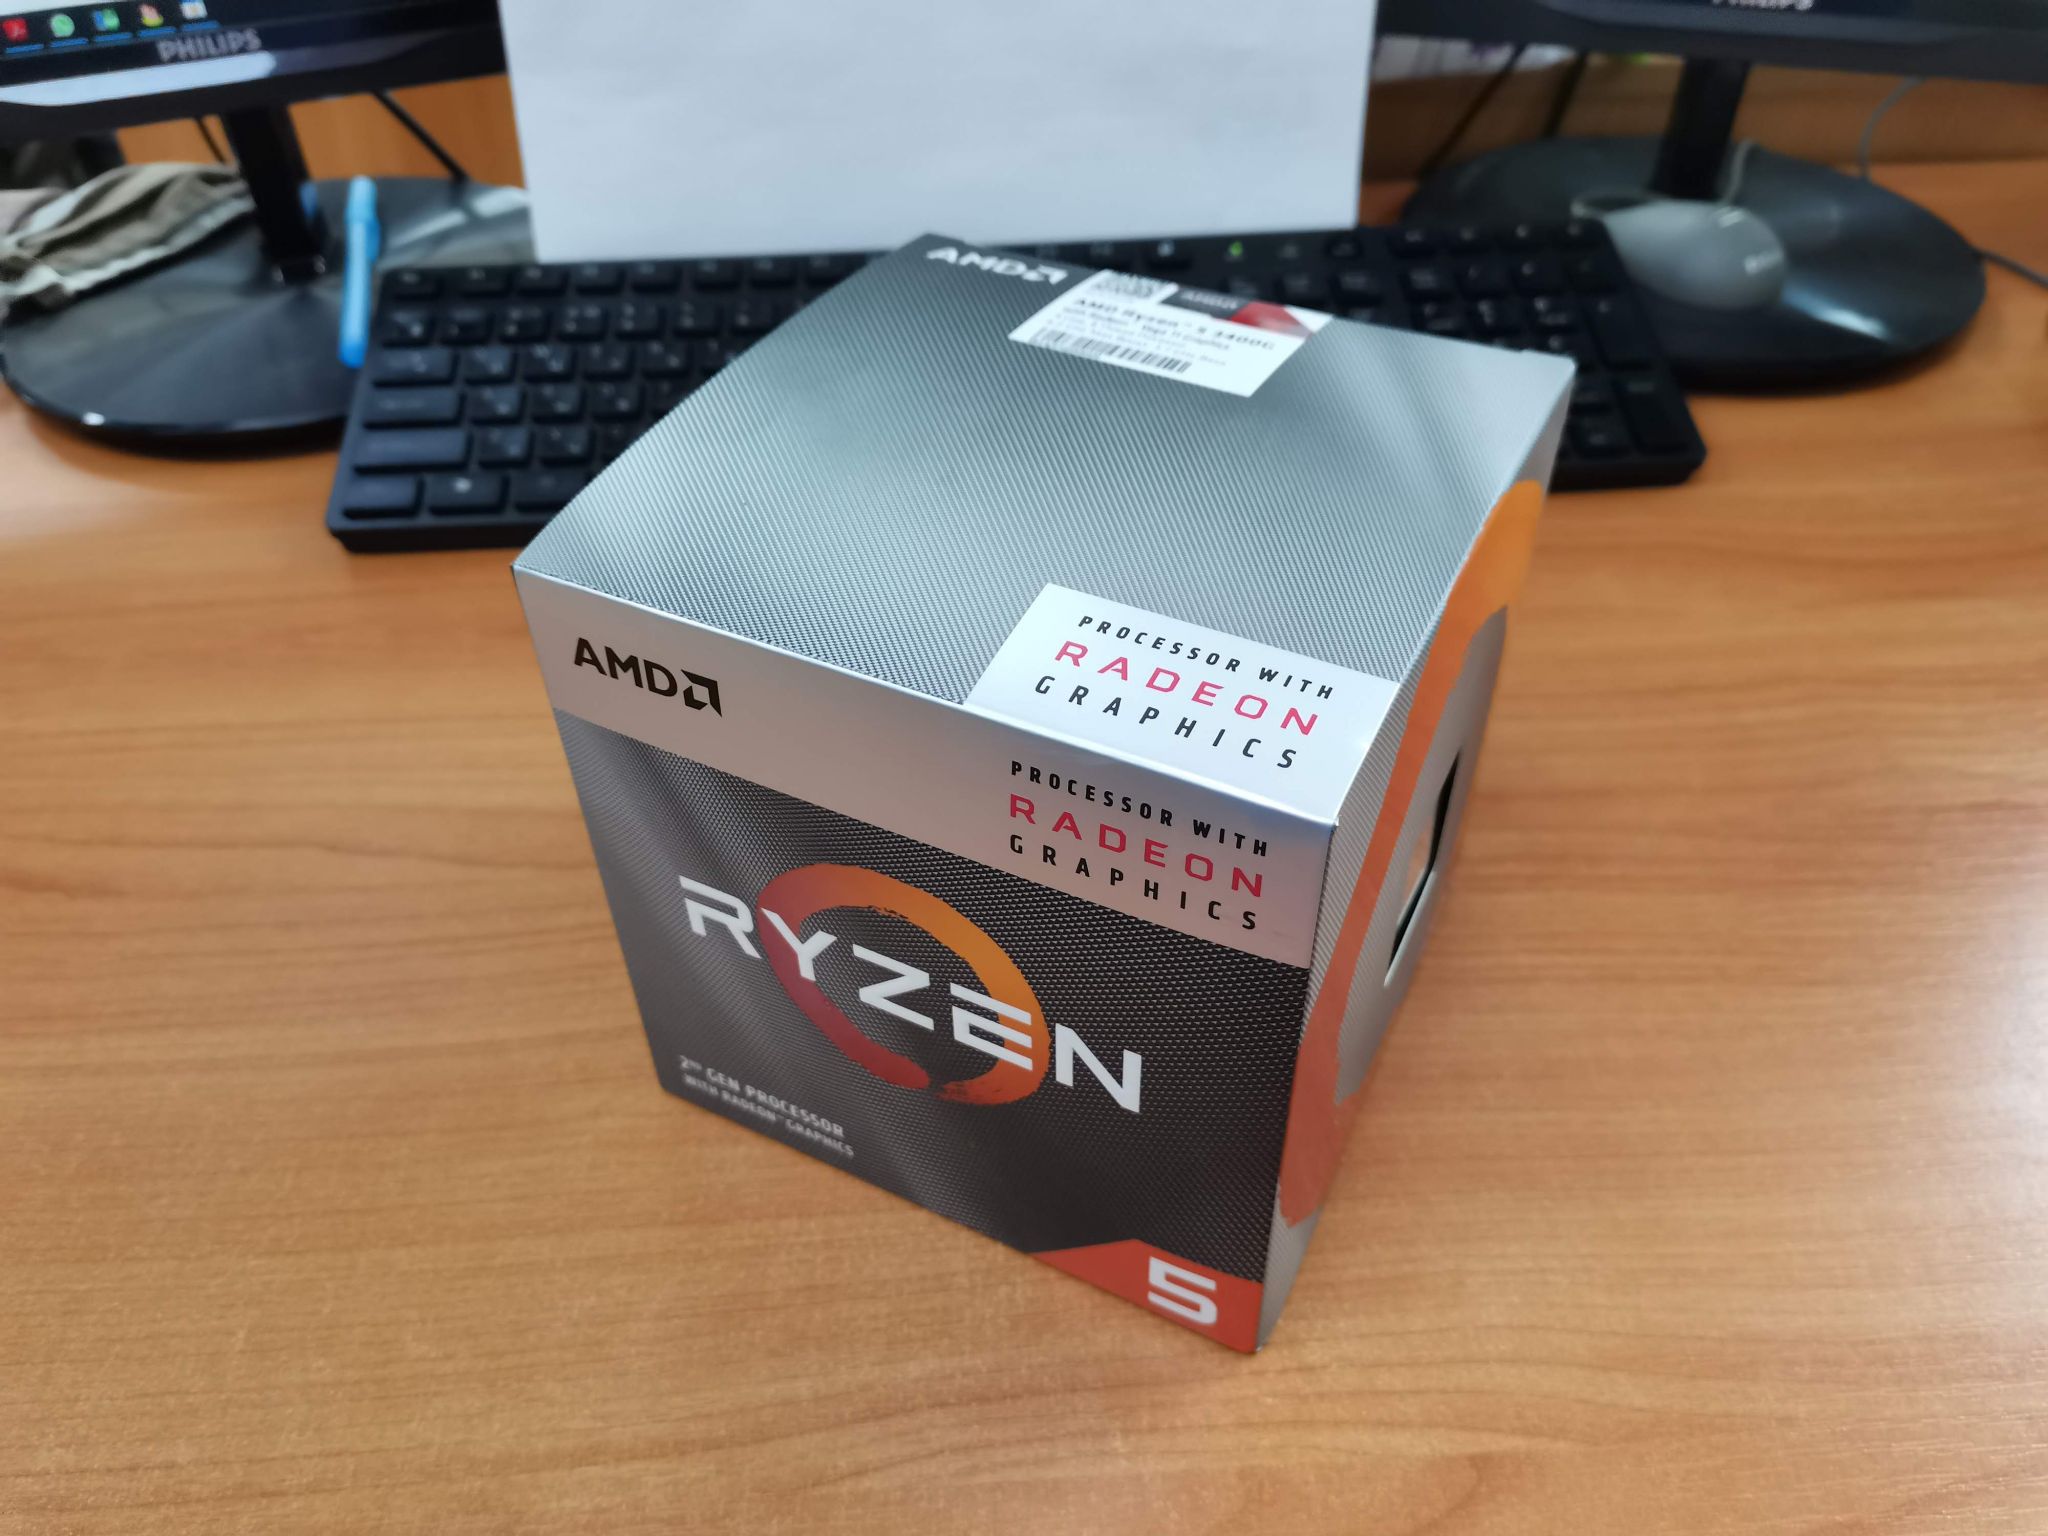 5 3400g купить. Ryzen 5 3400g. AMD Ryzen 5 3400g OEM. Ryzen 5 3400g коробка. Процессор АМД райзен 5 3400g.